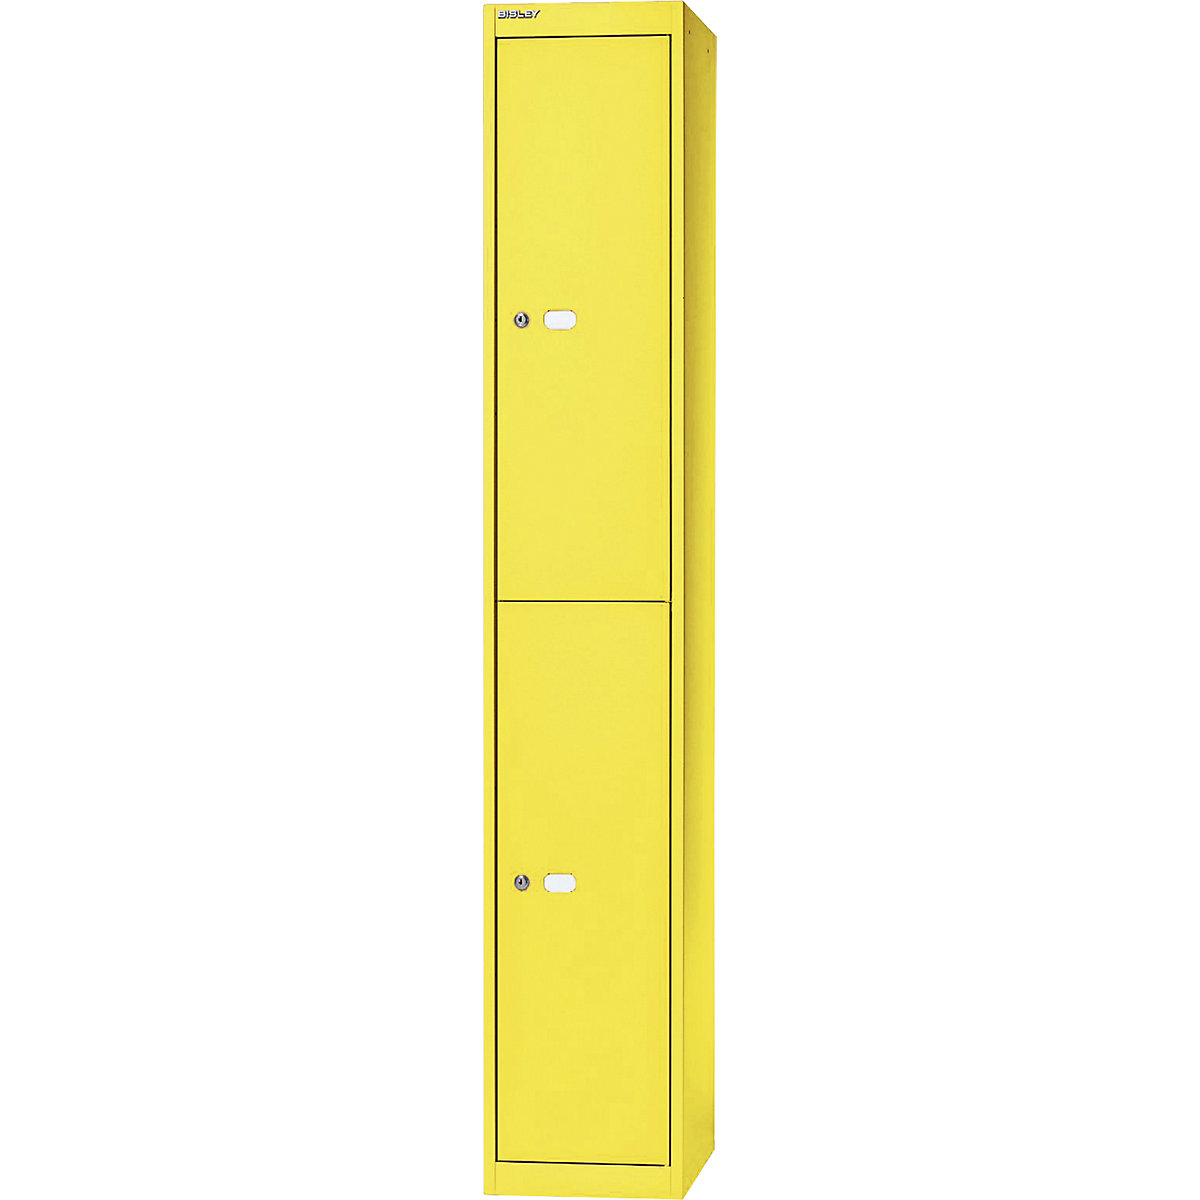 BISLEY OFFICE Garderobensystem, Tiefe 305 mm, 2 Fächer mit je 1 Kleiderhaken, gelb